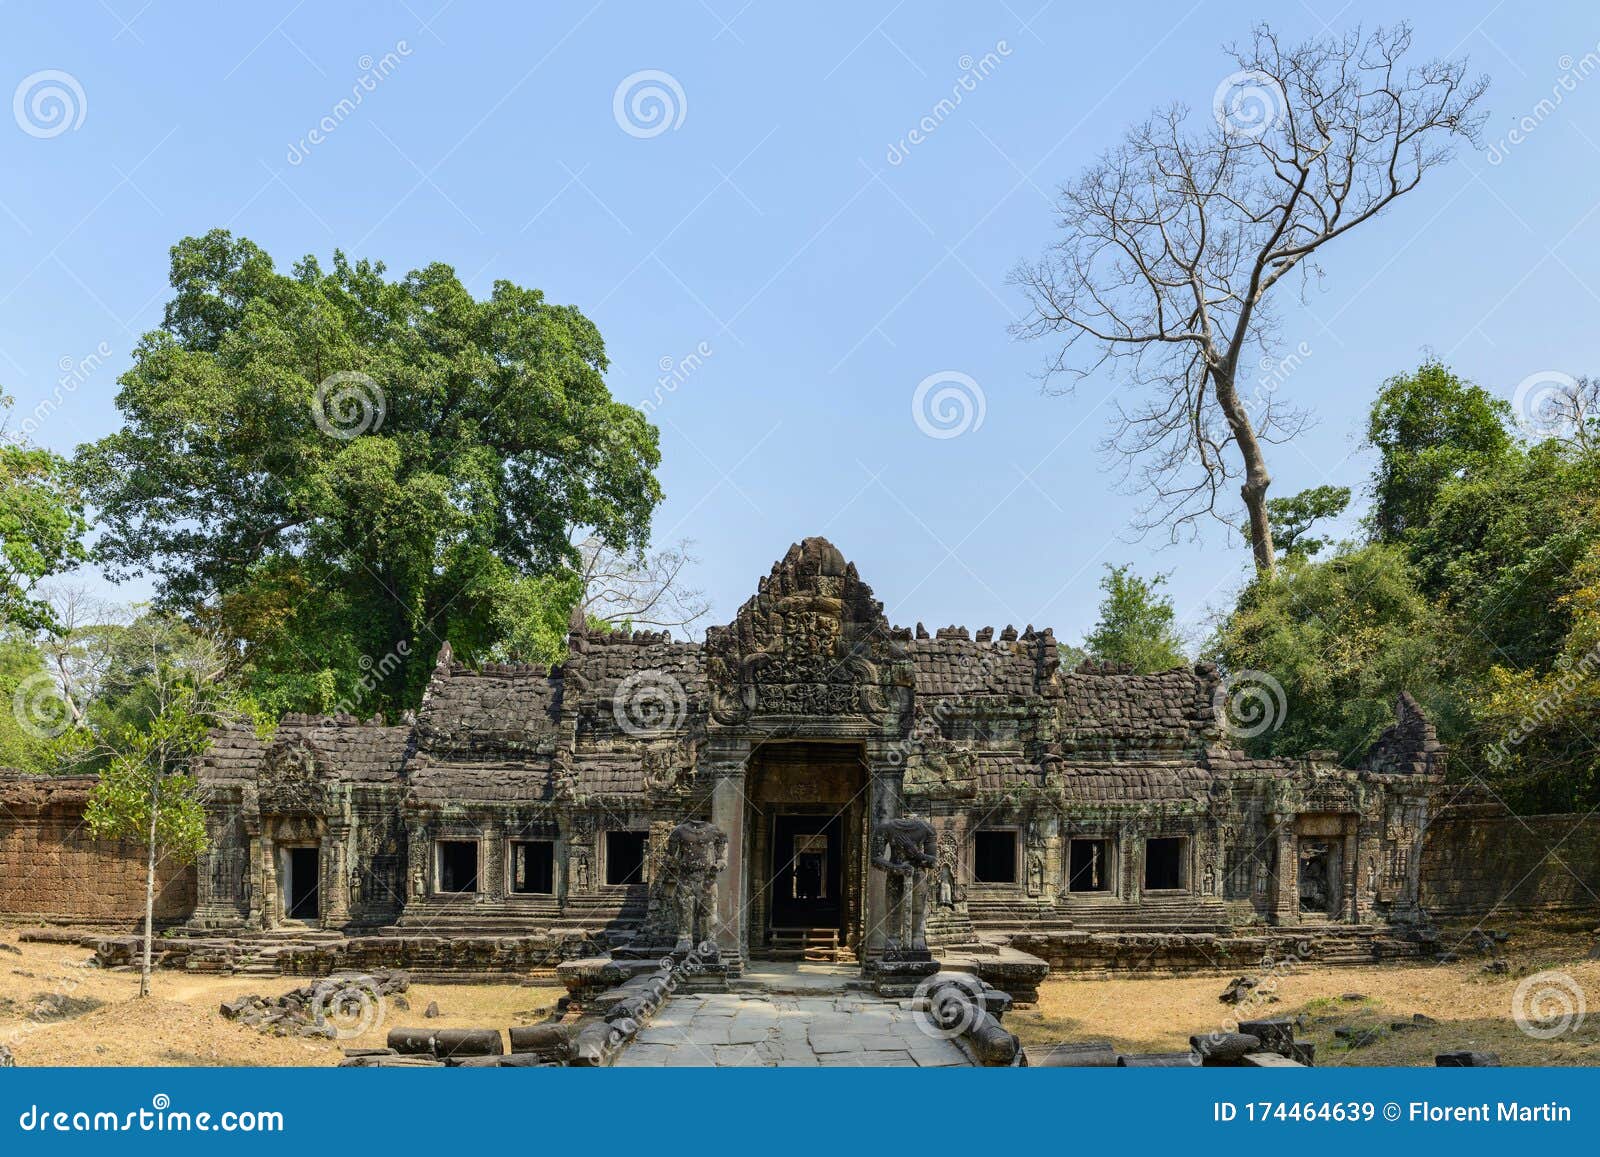 vue large sur la porte d`entrÃÂ©e nord et des arbres du temple preah khan dans le domaine des temples de angkor, au cambodge